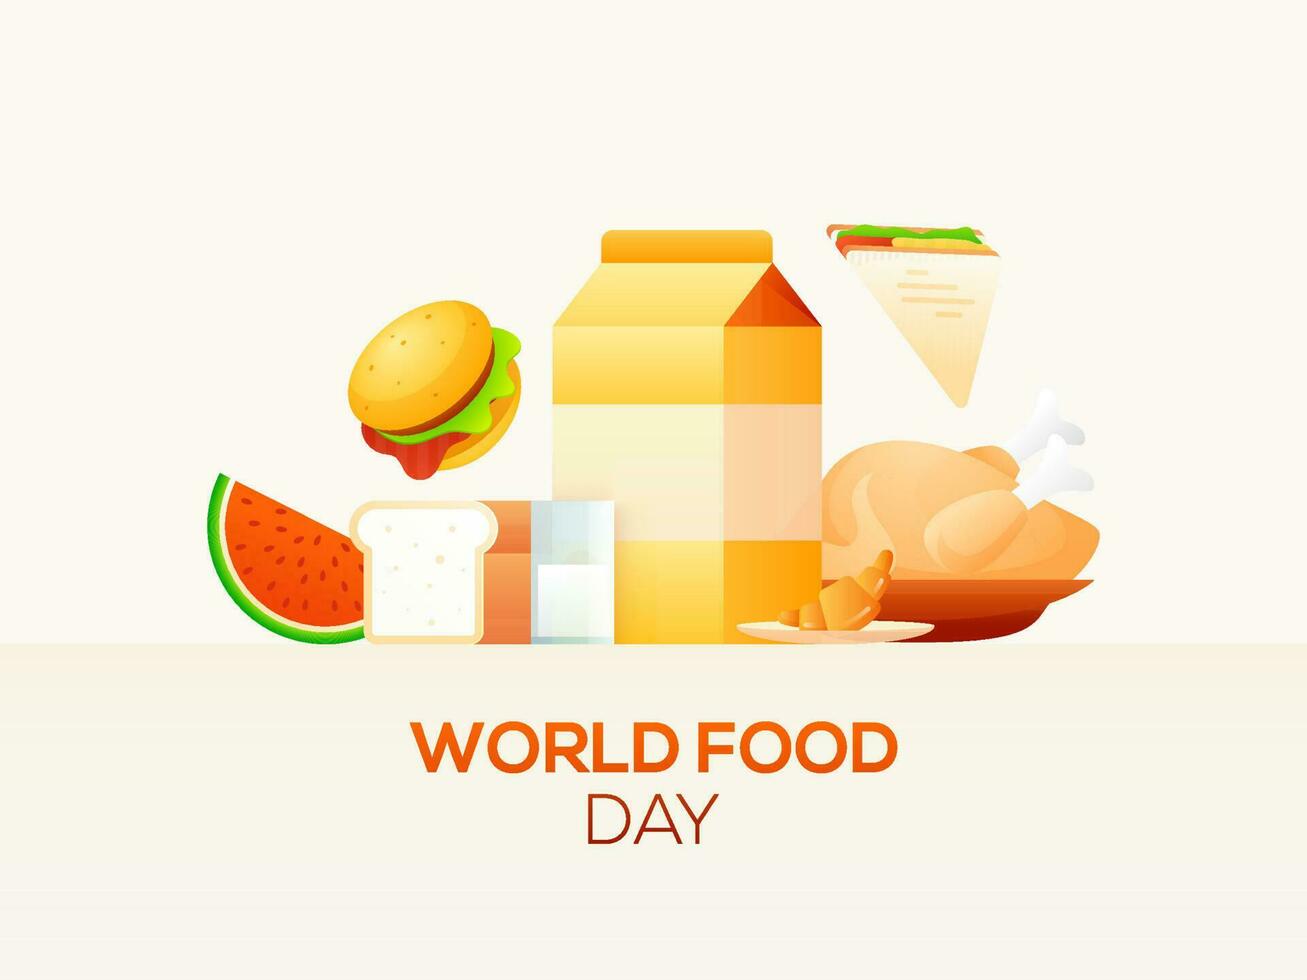 värld mat dag begrepp baserad affisch design med mat element tycka om som hamburgare, smörgås, vattenmelon, kyckling, bröd, croissant och paket på vit bakgrund. vektor